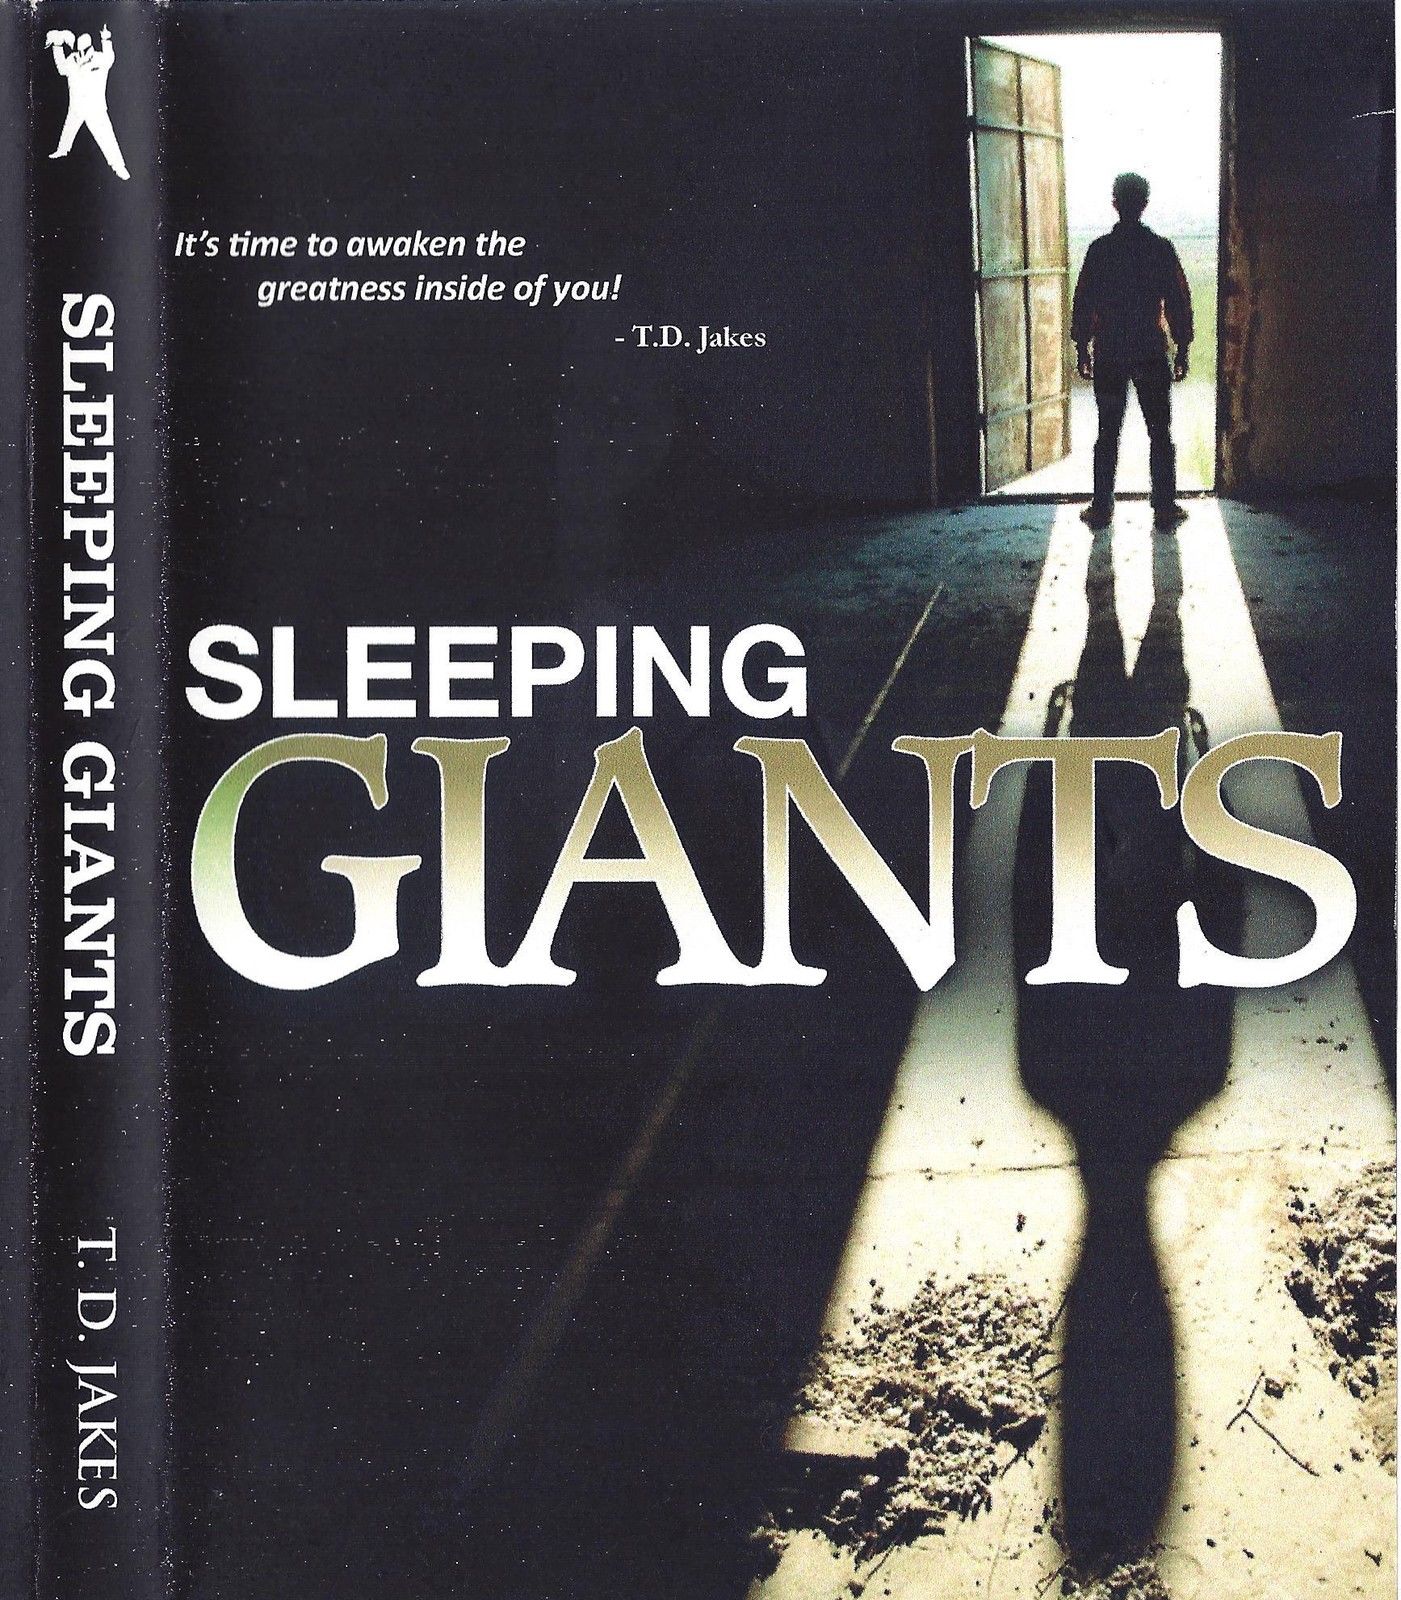 Sleeping Giants 2 DVDs